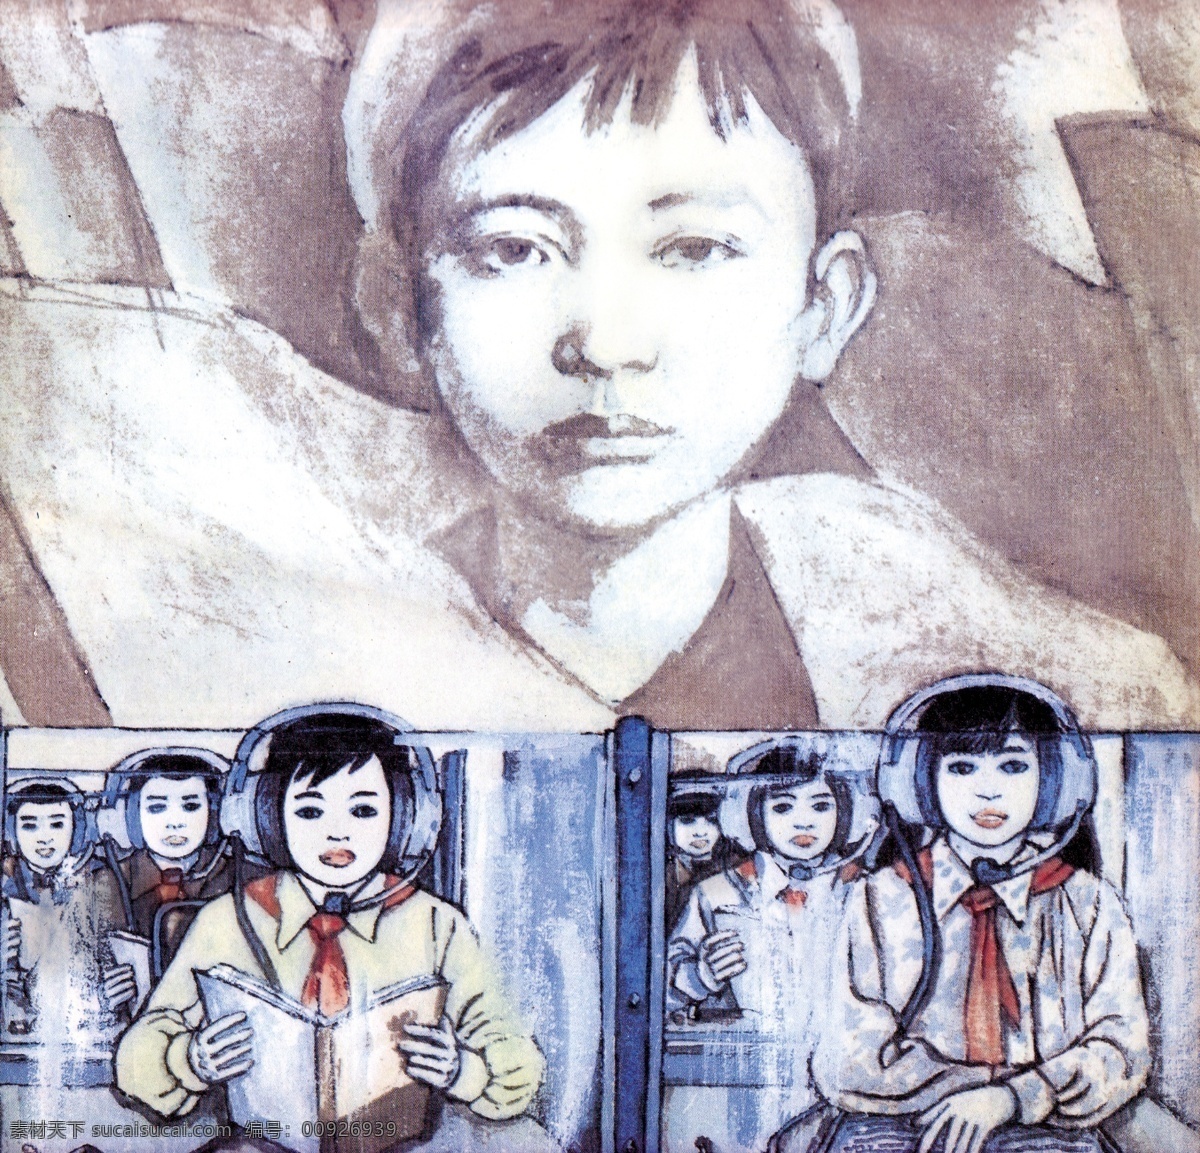 少先队队史 代表大会 老照片 历史图片 小学 历史 儿童革命组织 共产党创立 劳动童子团 绘画书法 文化艺术